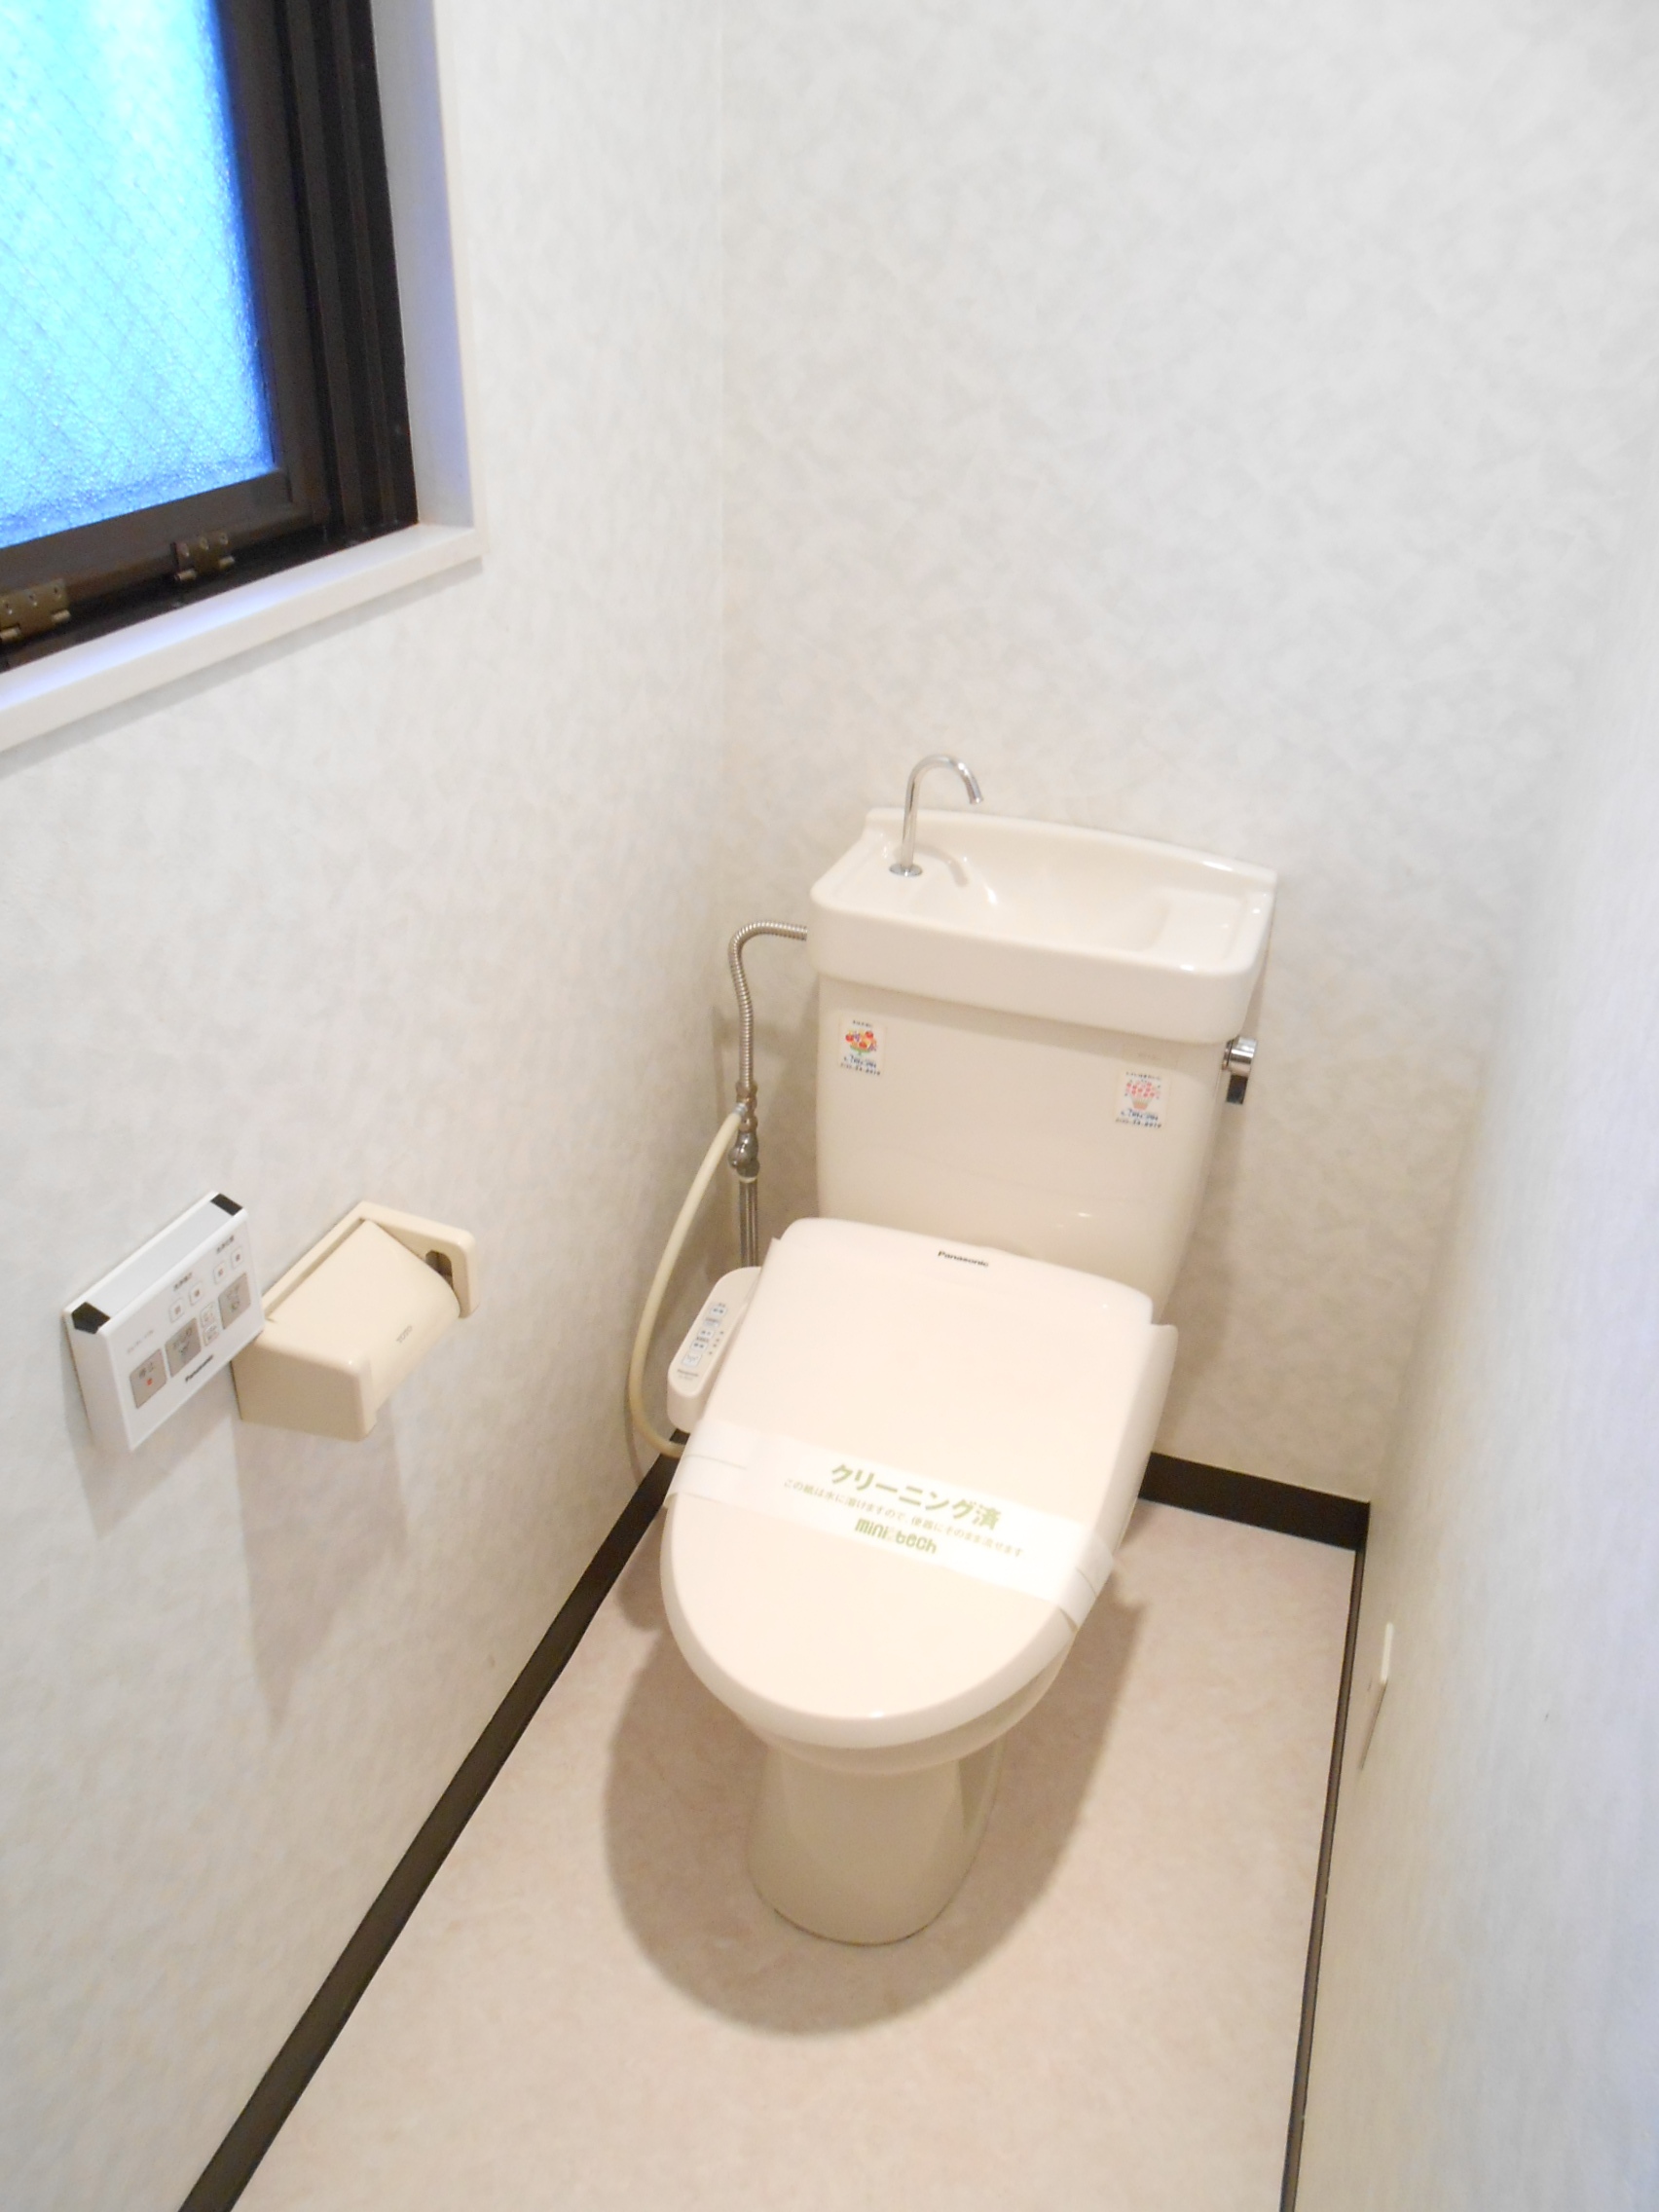 Toilet. The toilet has a window